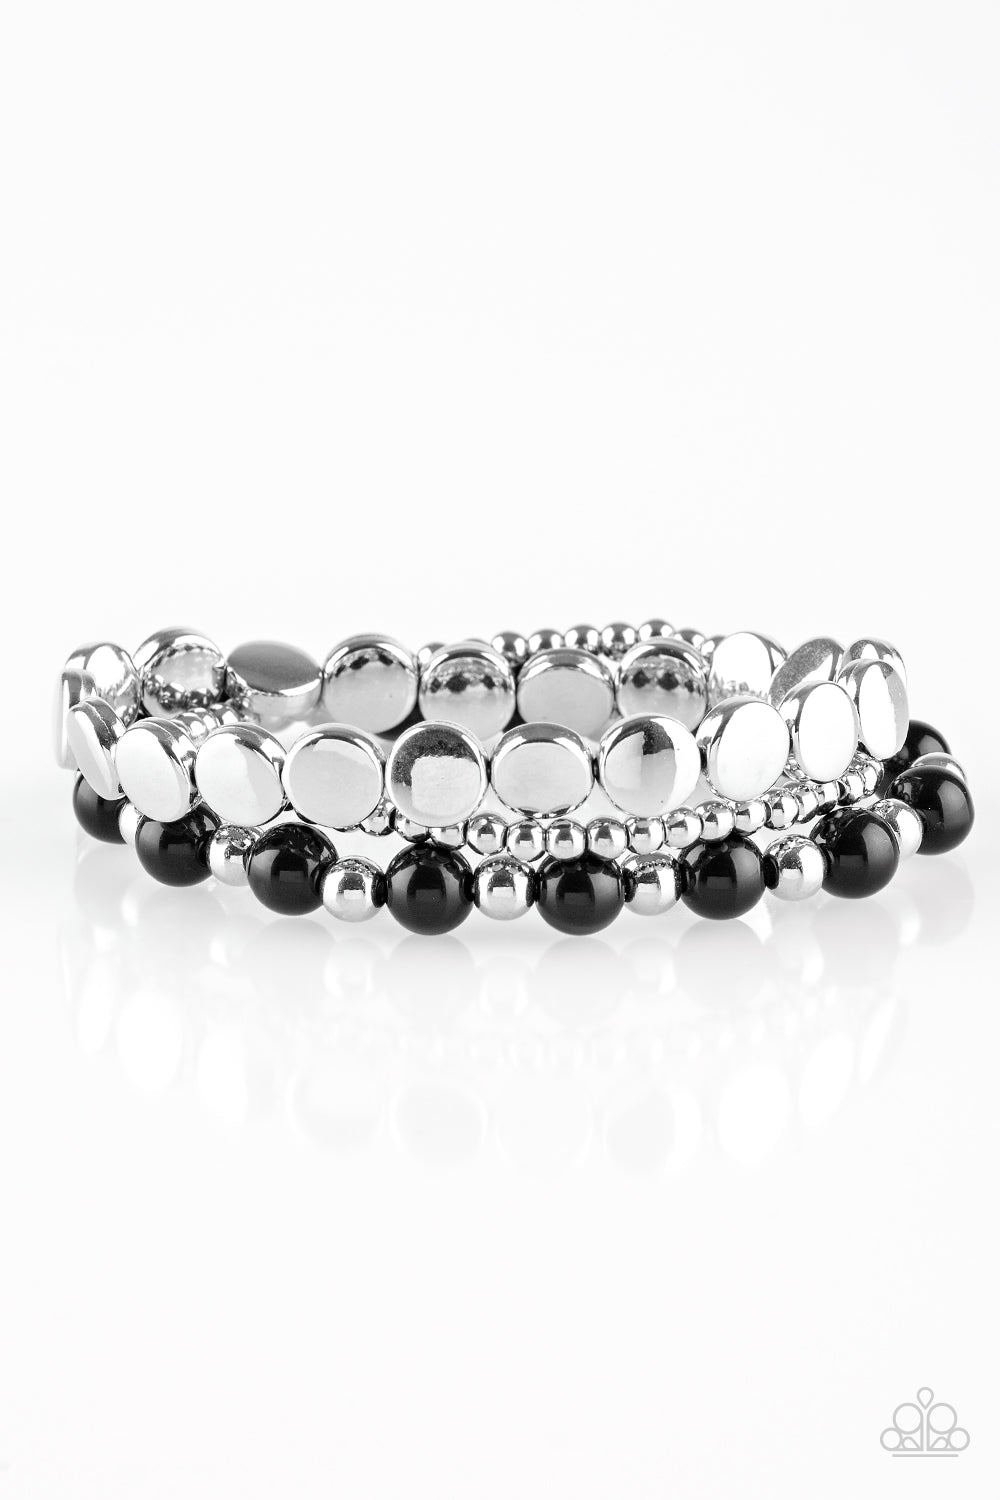 Girly Girl Glamour - Black / Silver Bead bracelet